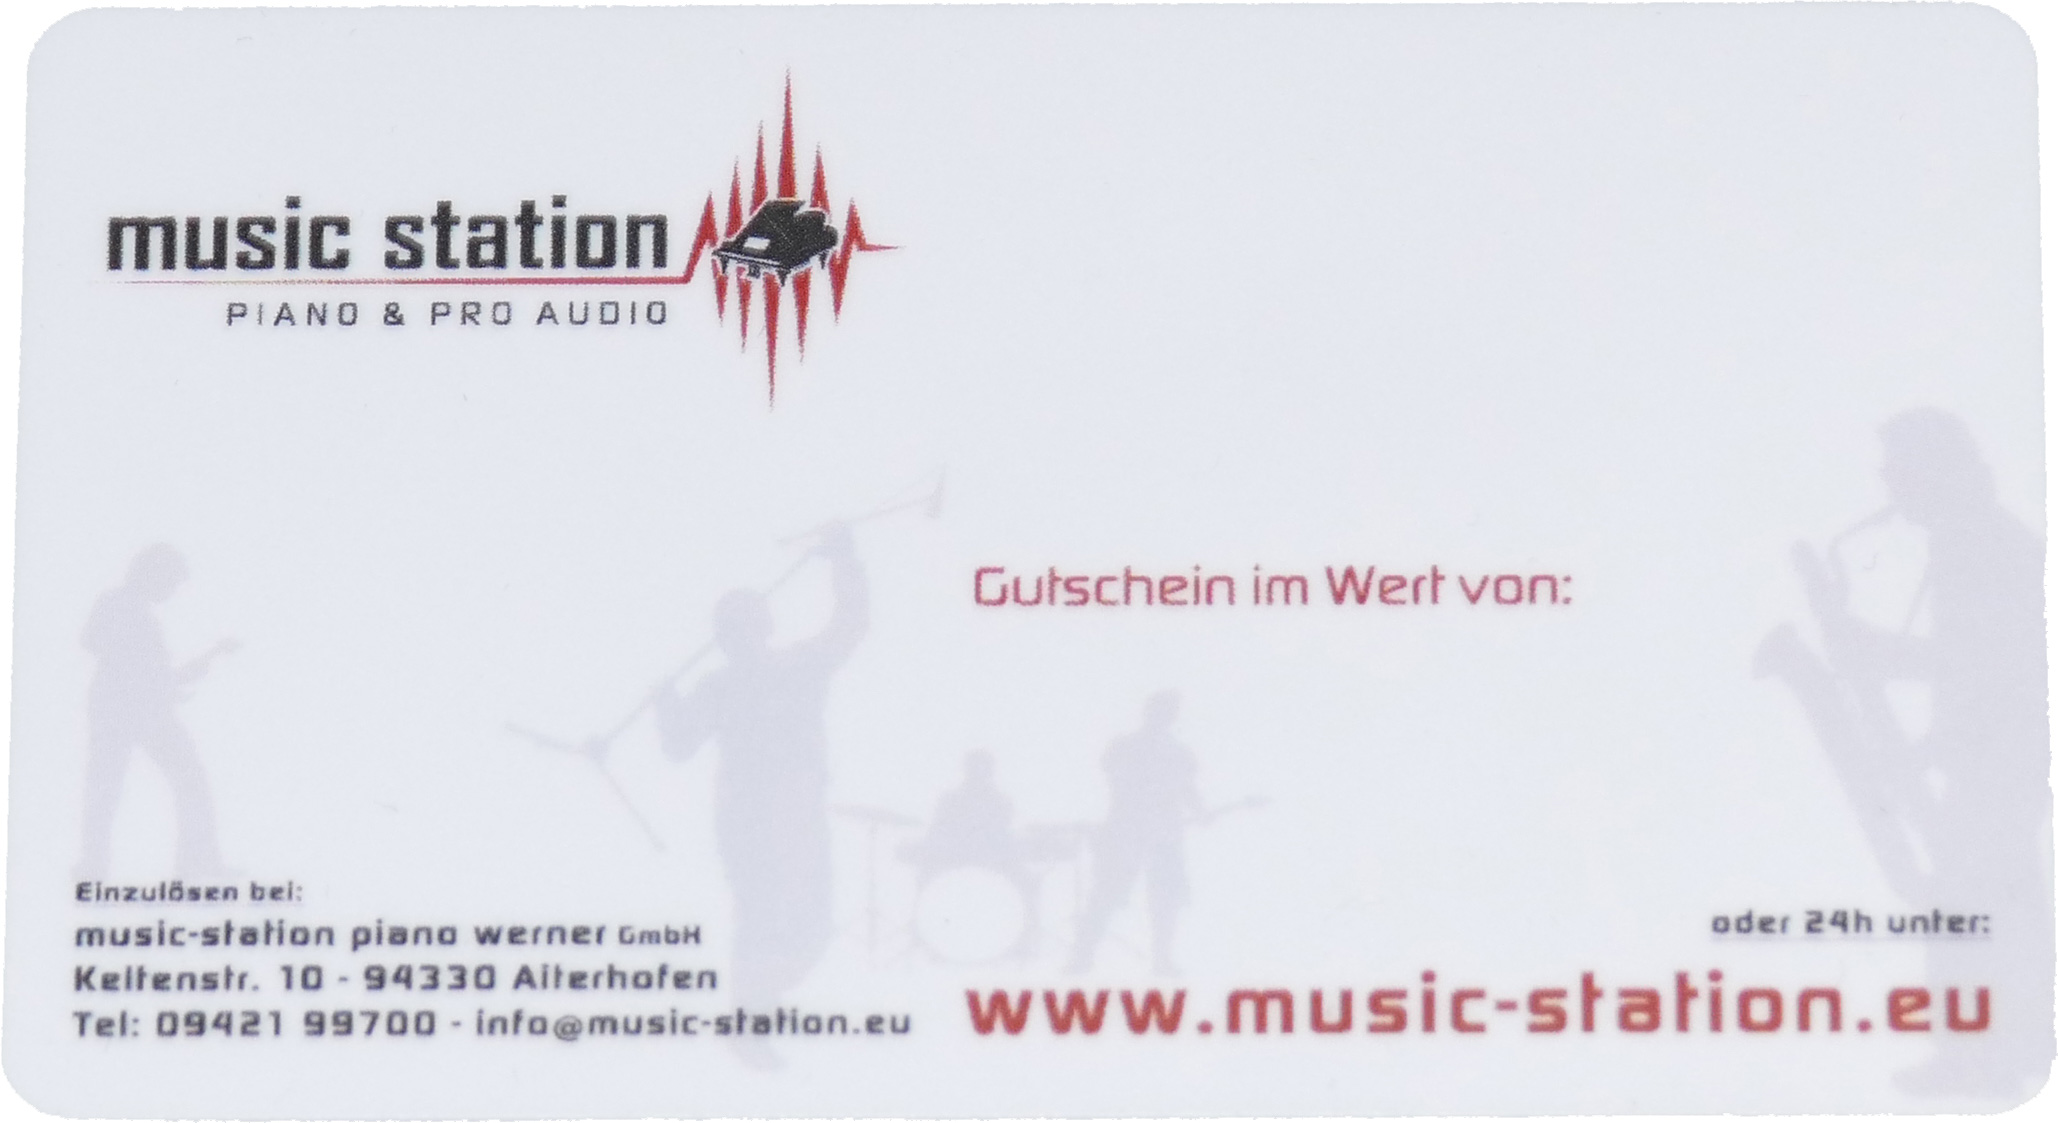 Music Station Gutschein 50 Euro